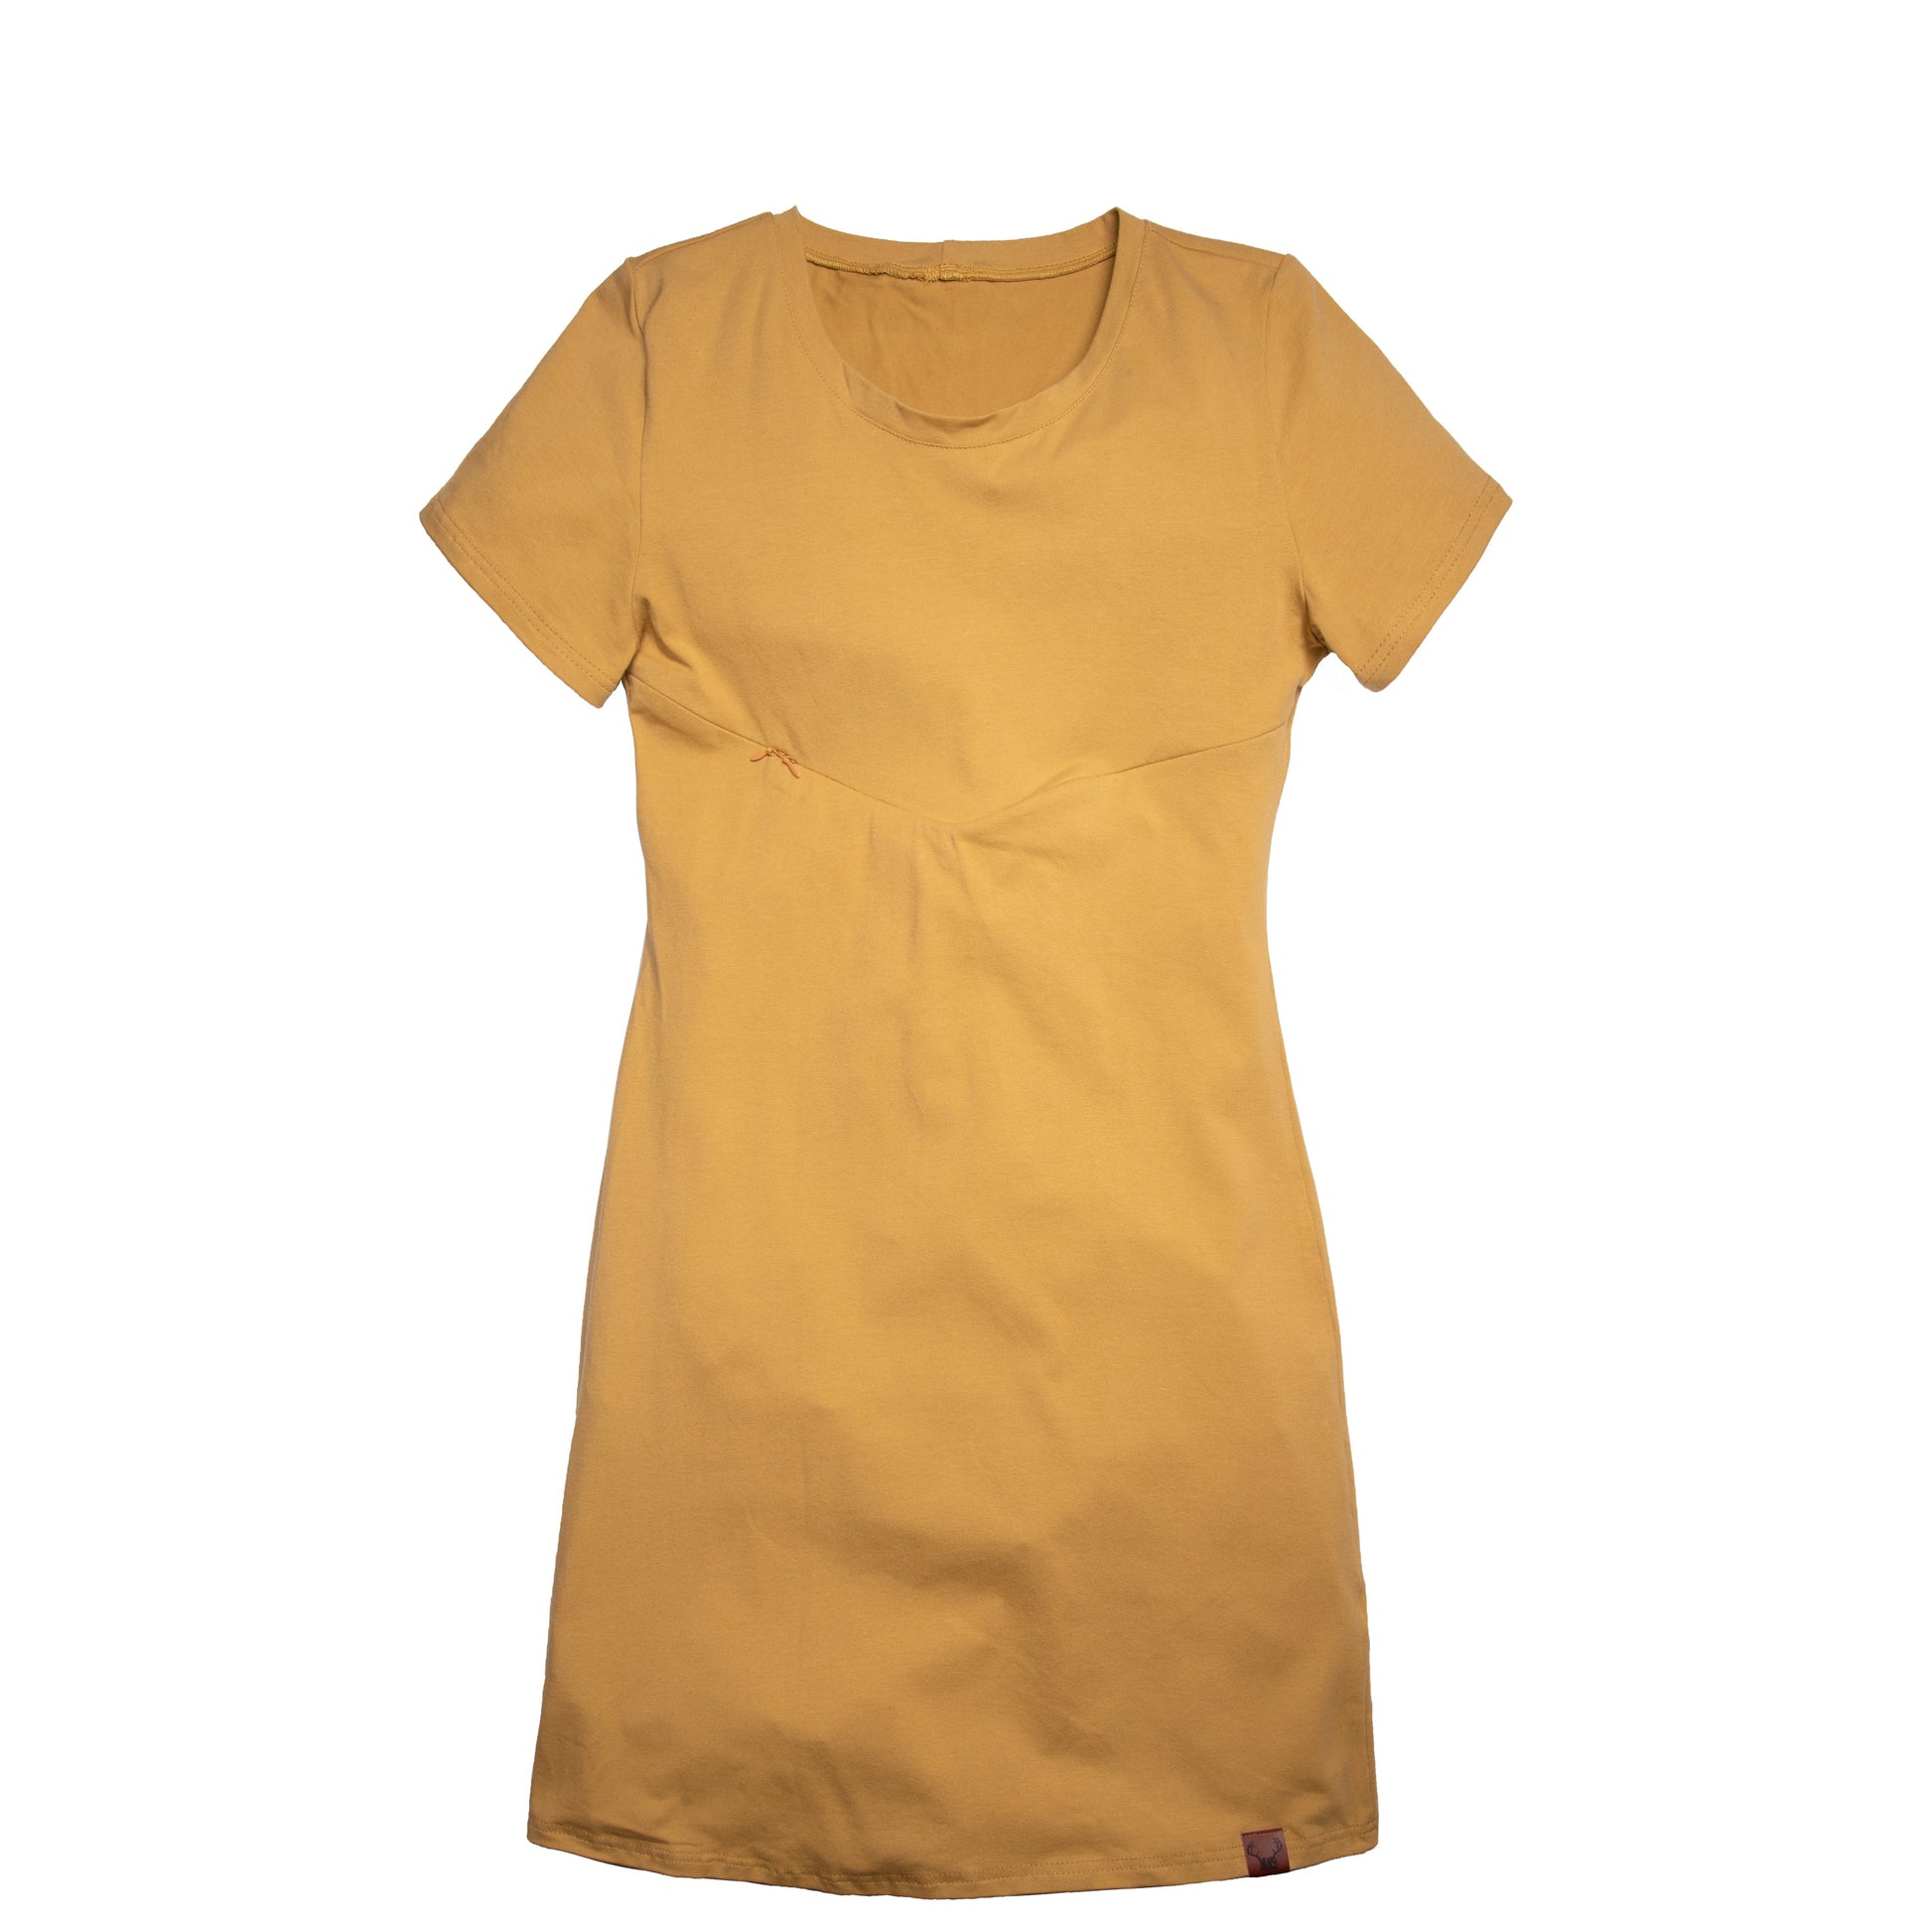 Robe jaune or moutarde 3 en 1 maternité, allaitement et postpartum Nine Clothing